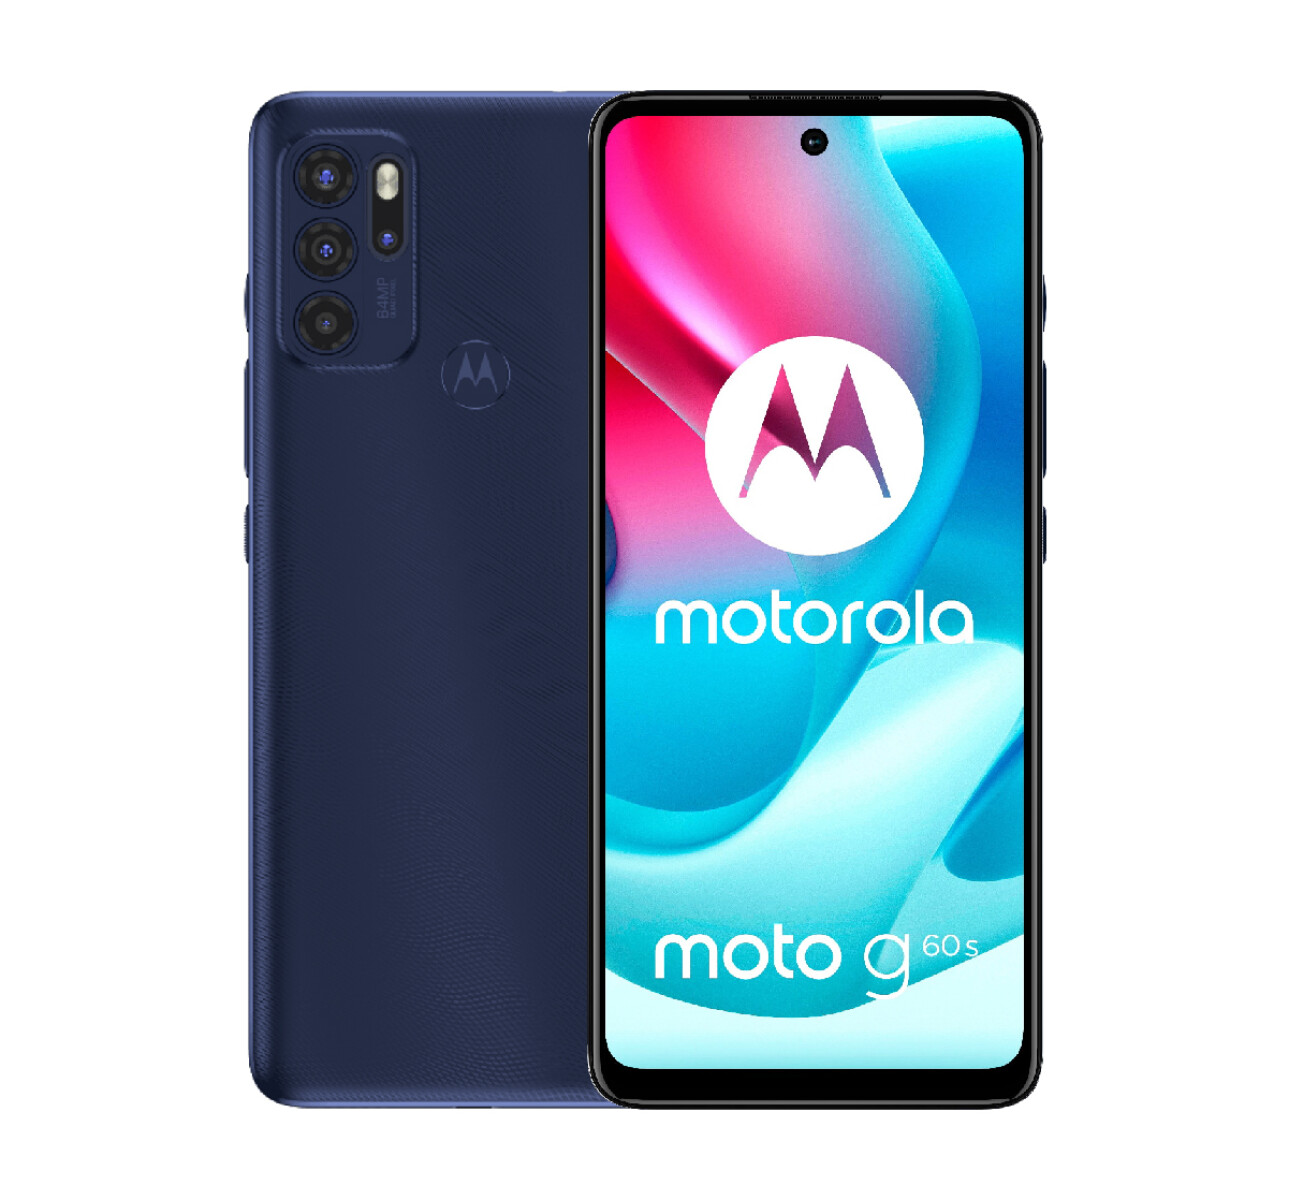 Motorola g60s 128gb / 6gb ram dual sim - Azul 